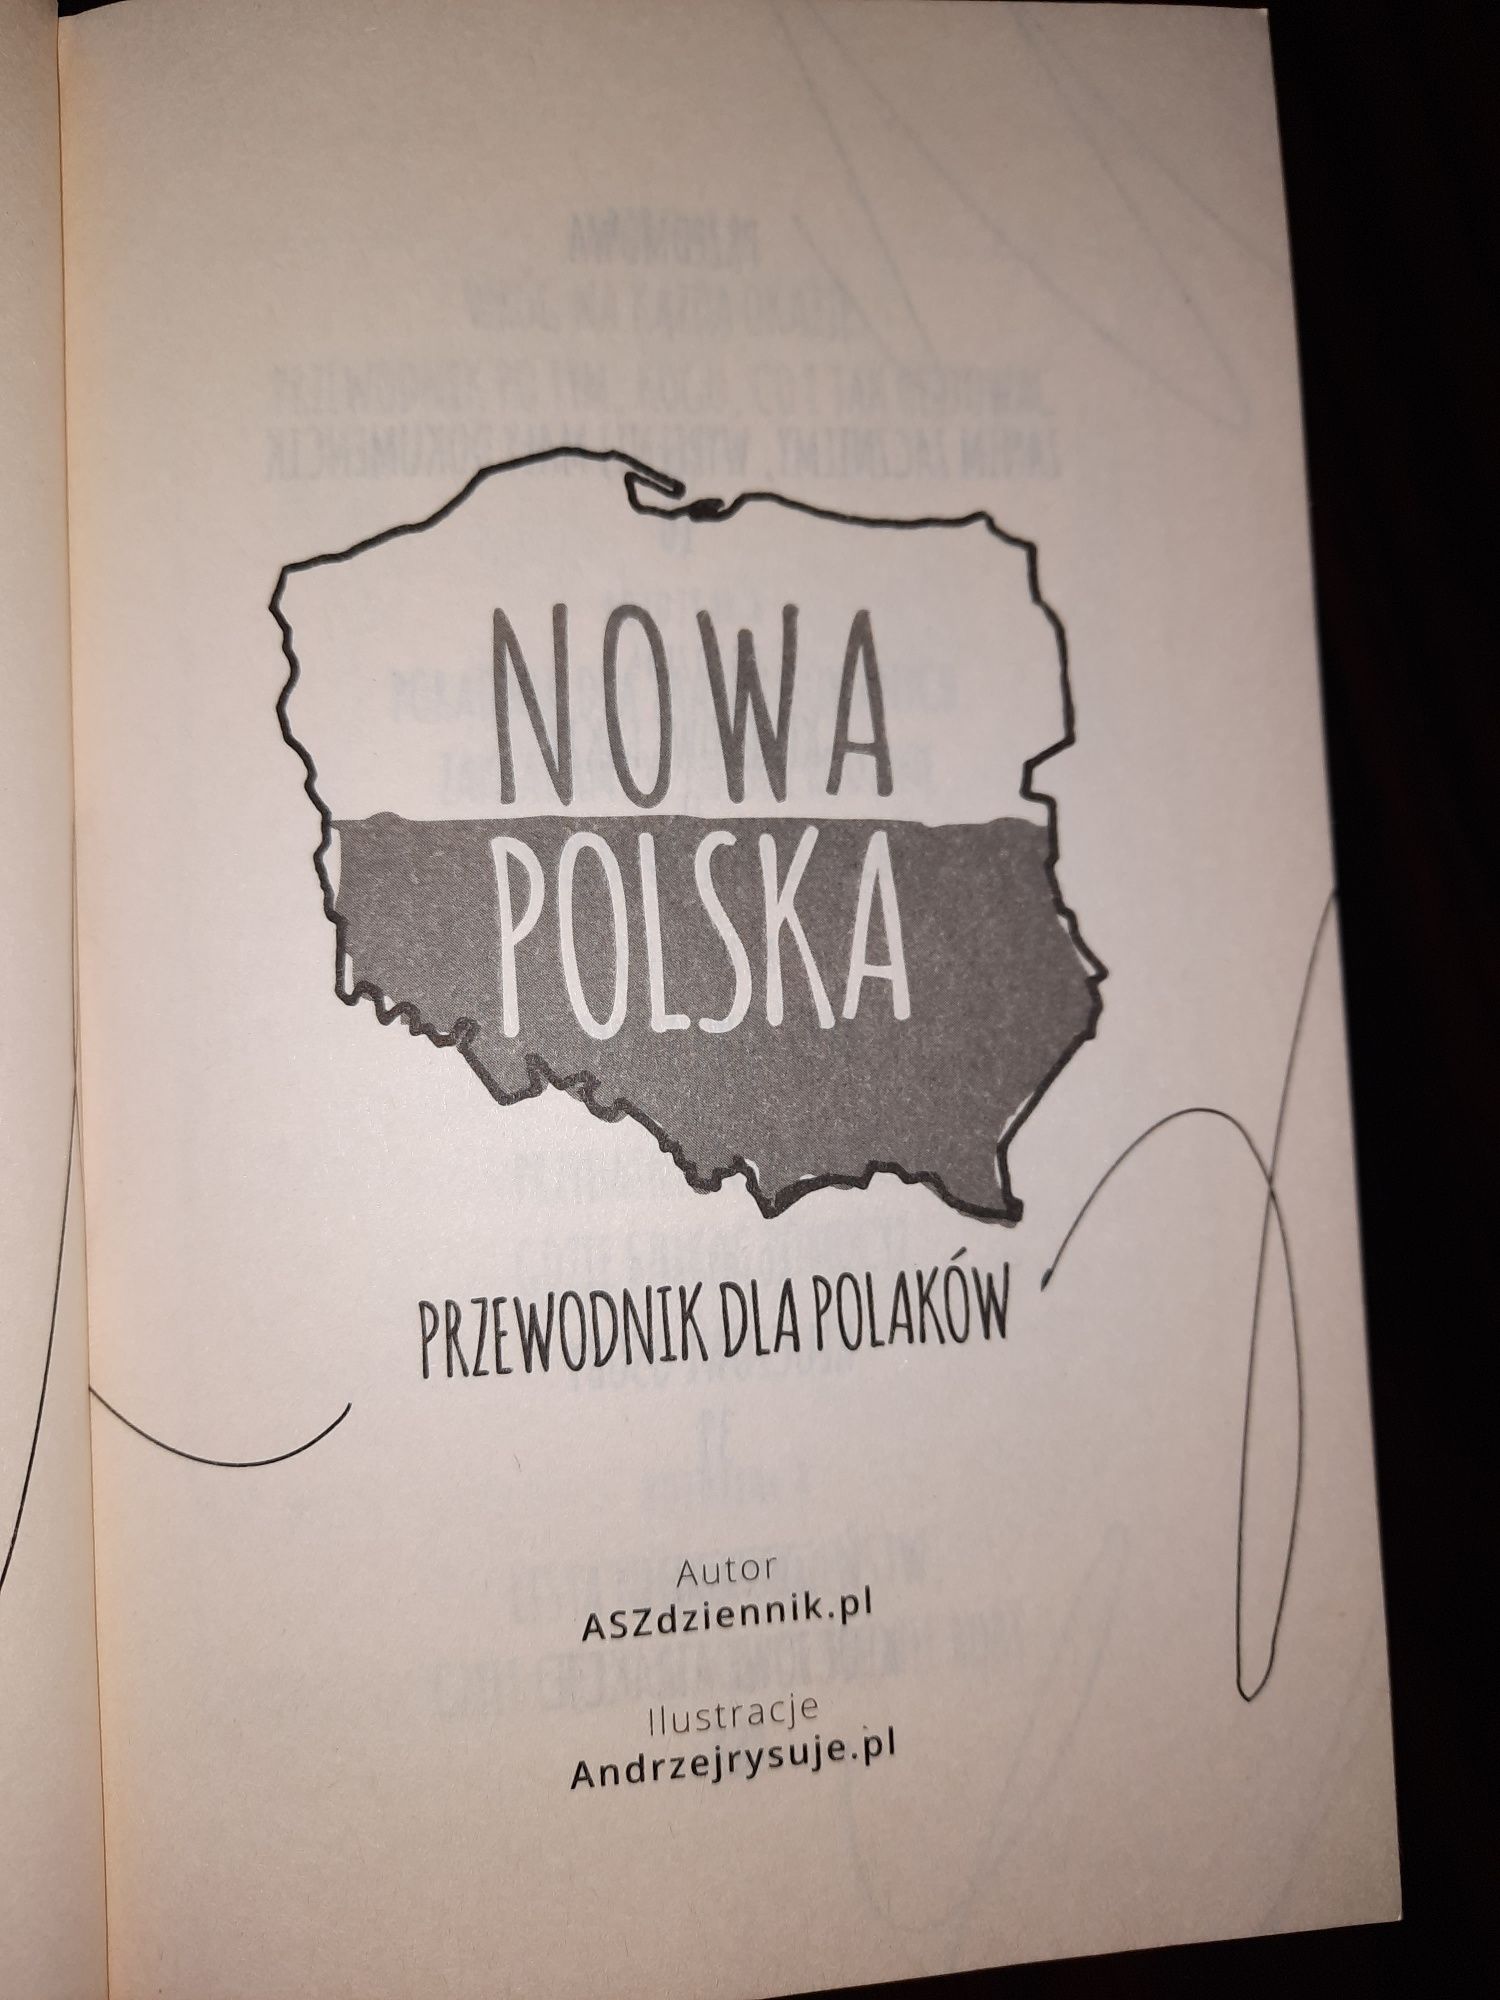 "Aszdziennik.pl przedstawia:NOWA POLSKA.Przewodnik dla Polaków "